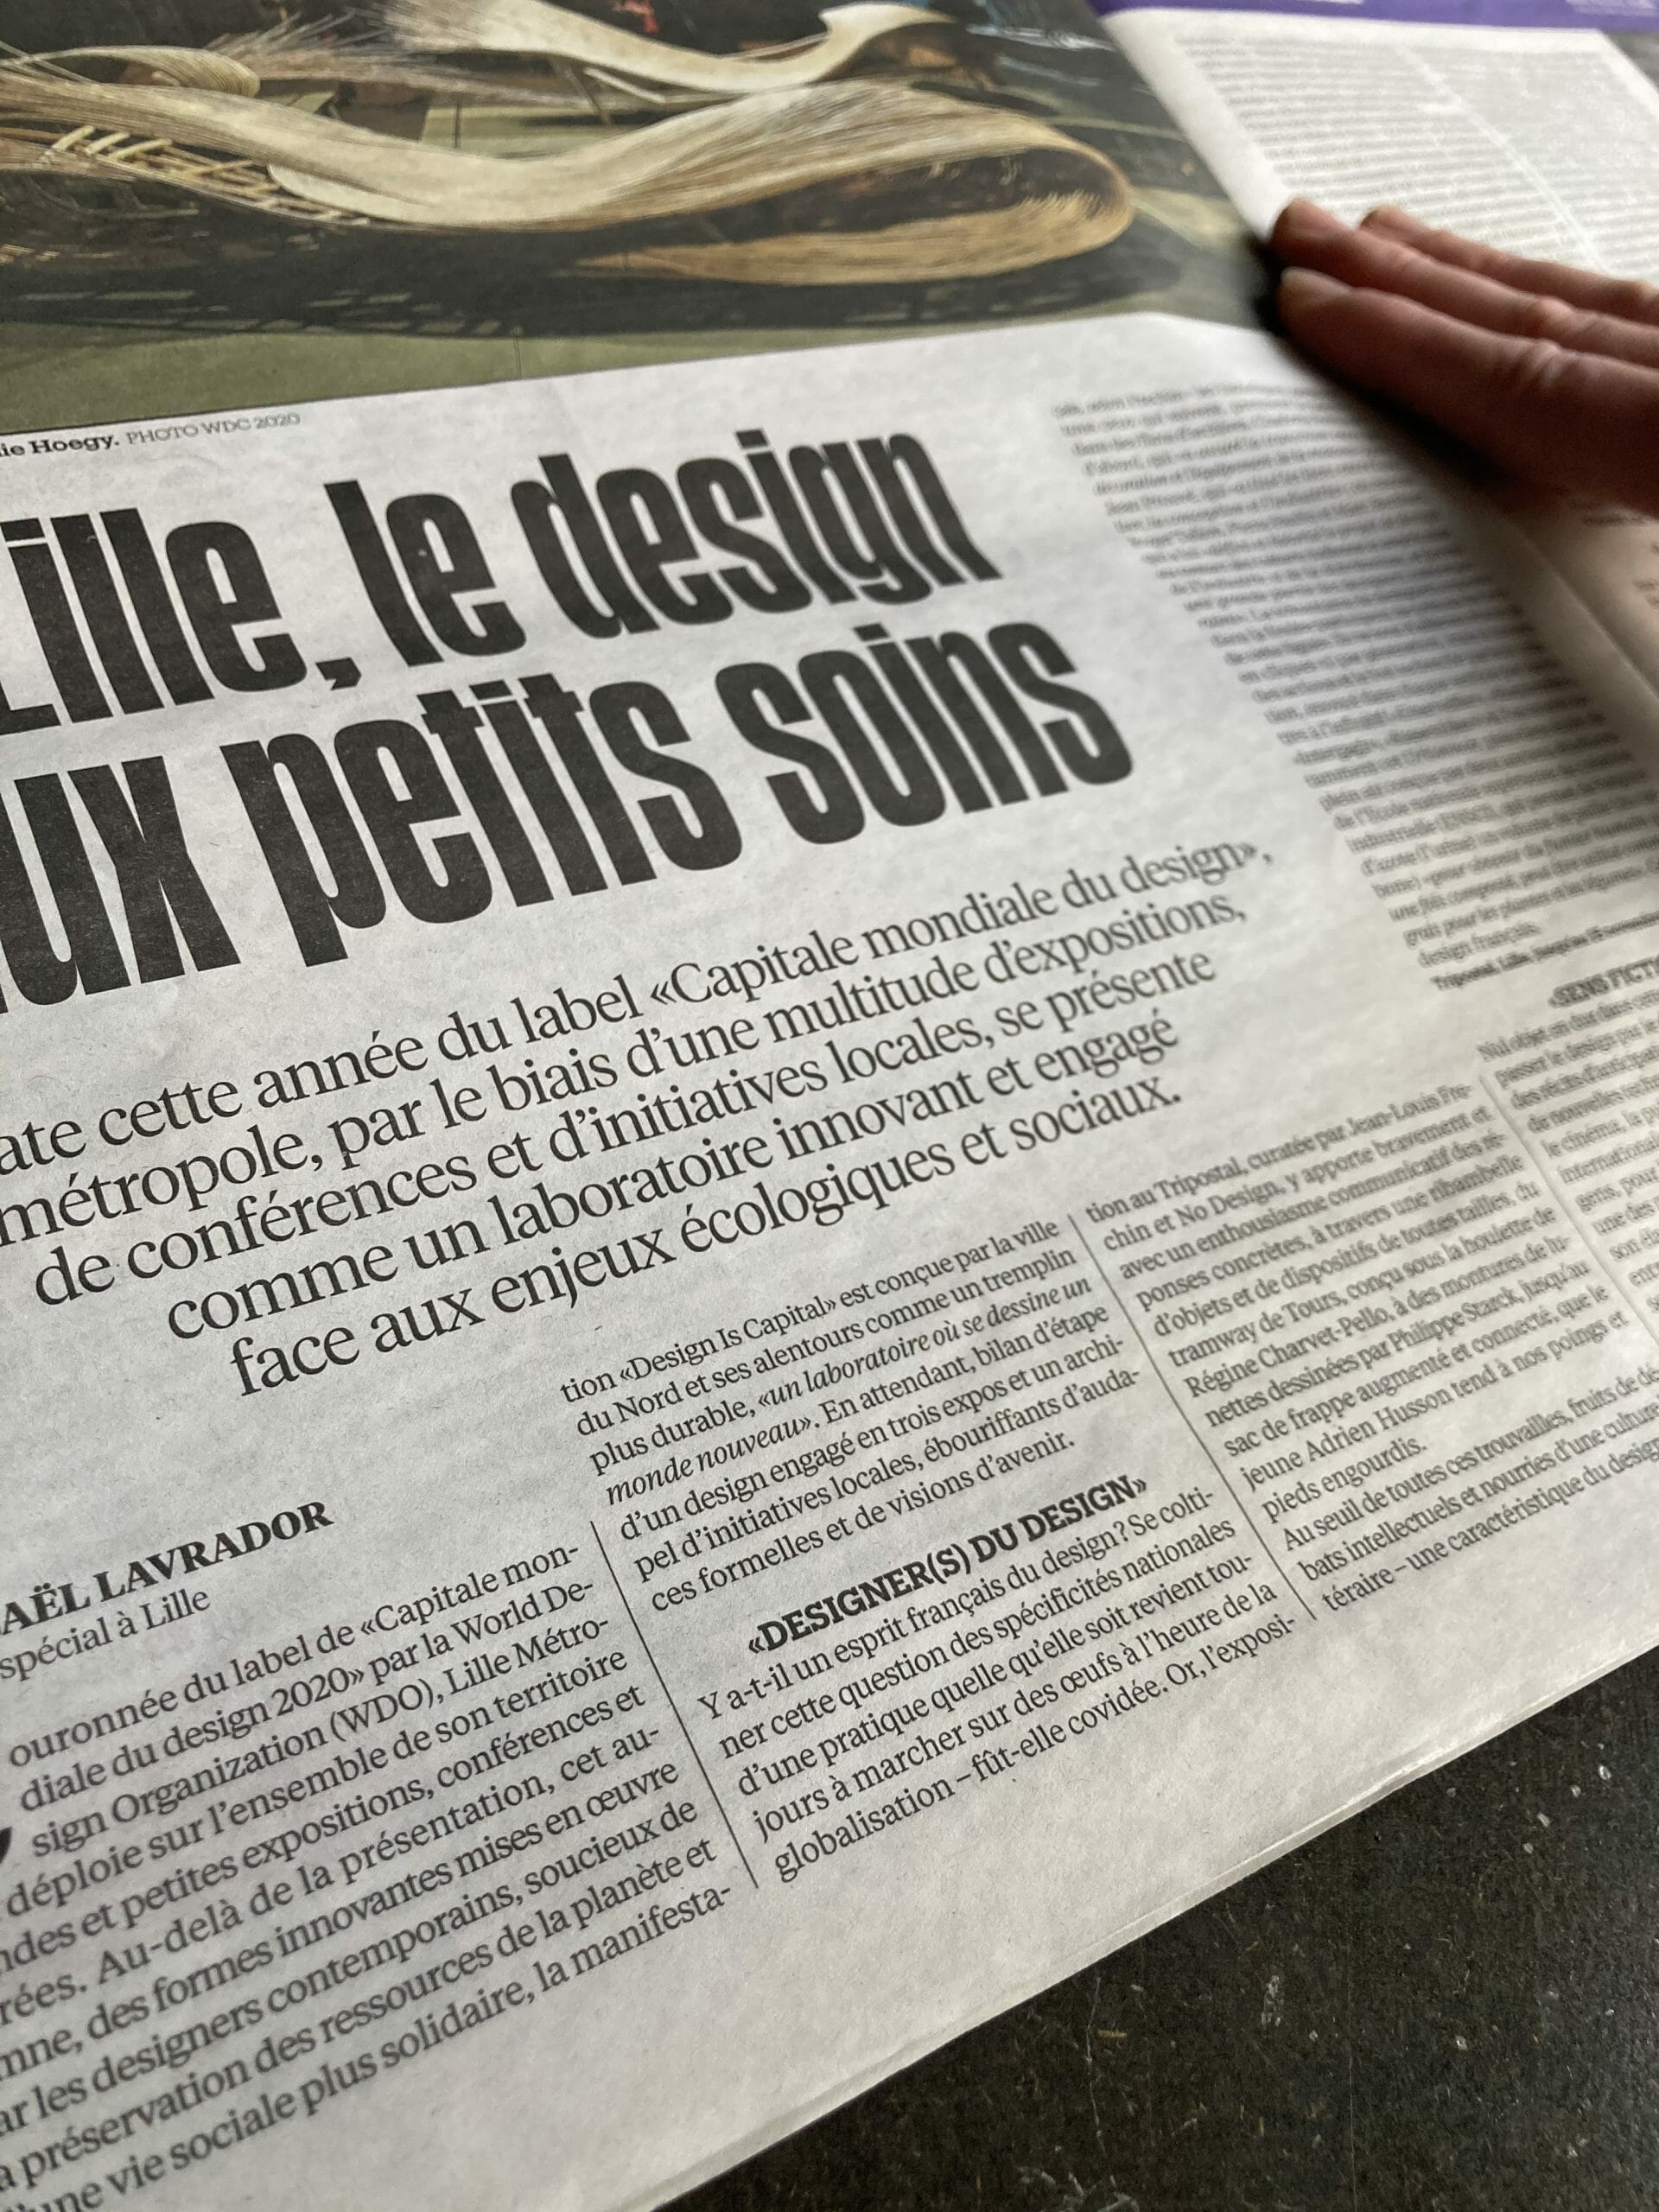 Designer(s) Du Design dans Libération